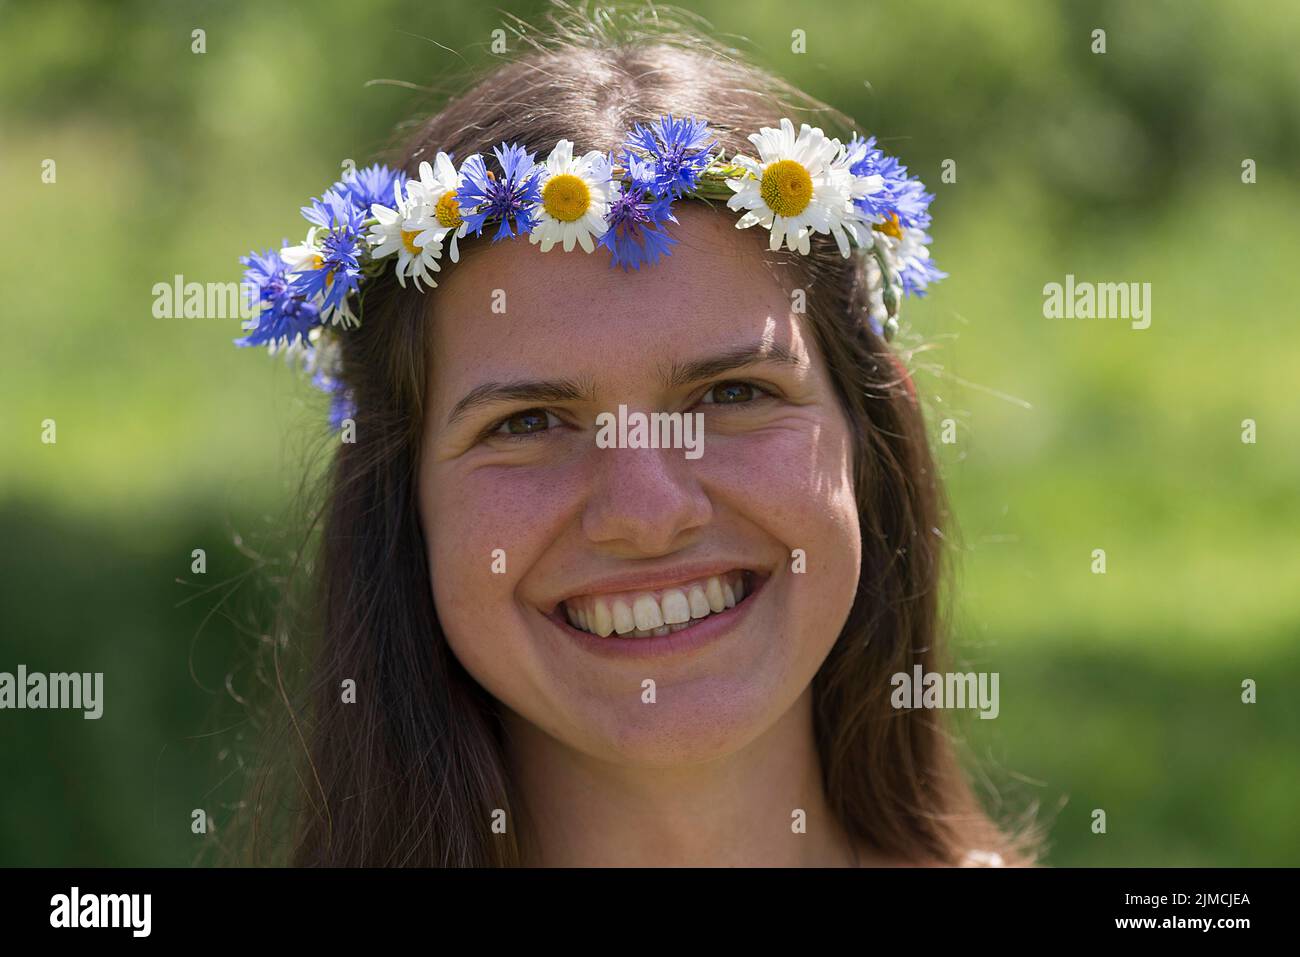 Ritratto di una sposa con una corona di fiori nei suoi capelli, Meclemburgo-Pomerania occidentale, Germania Foto Stock